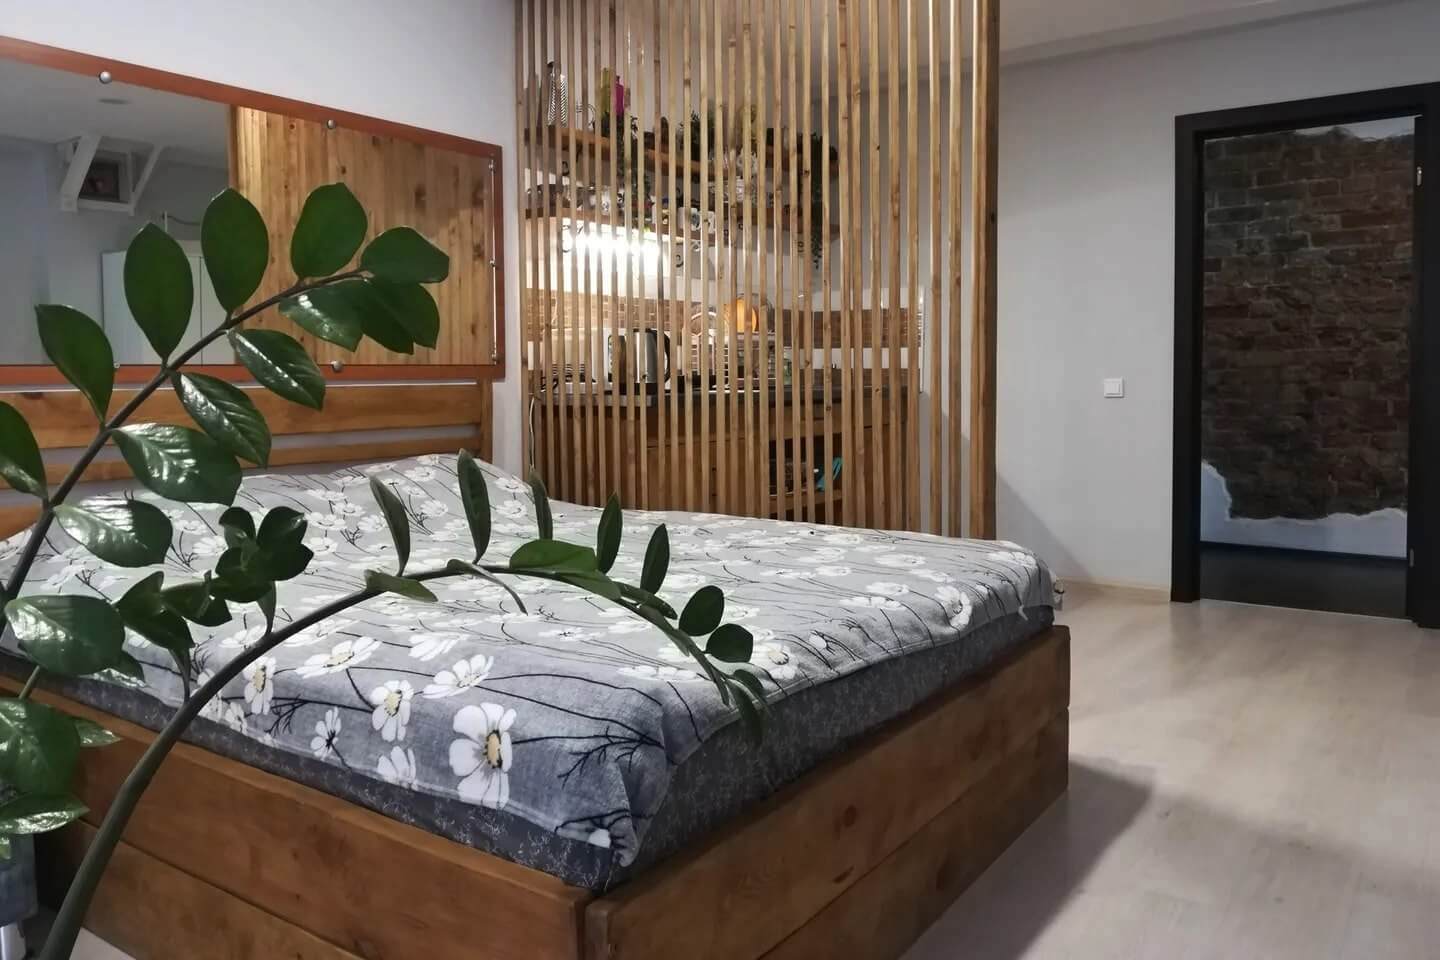 Спальное место: кровать, комнатное растение и деревянная перегородка.